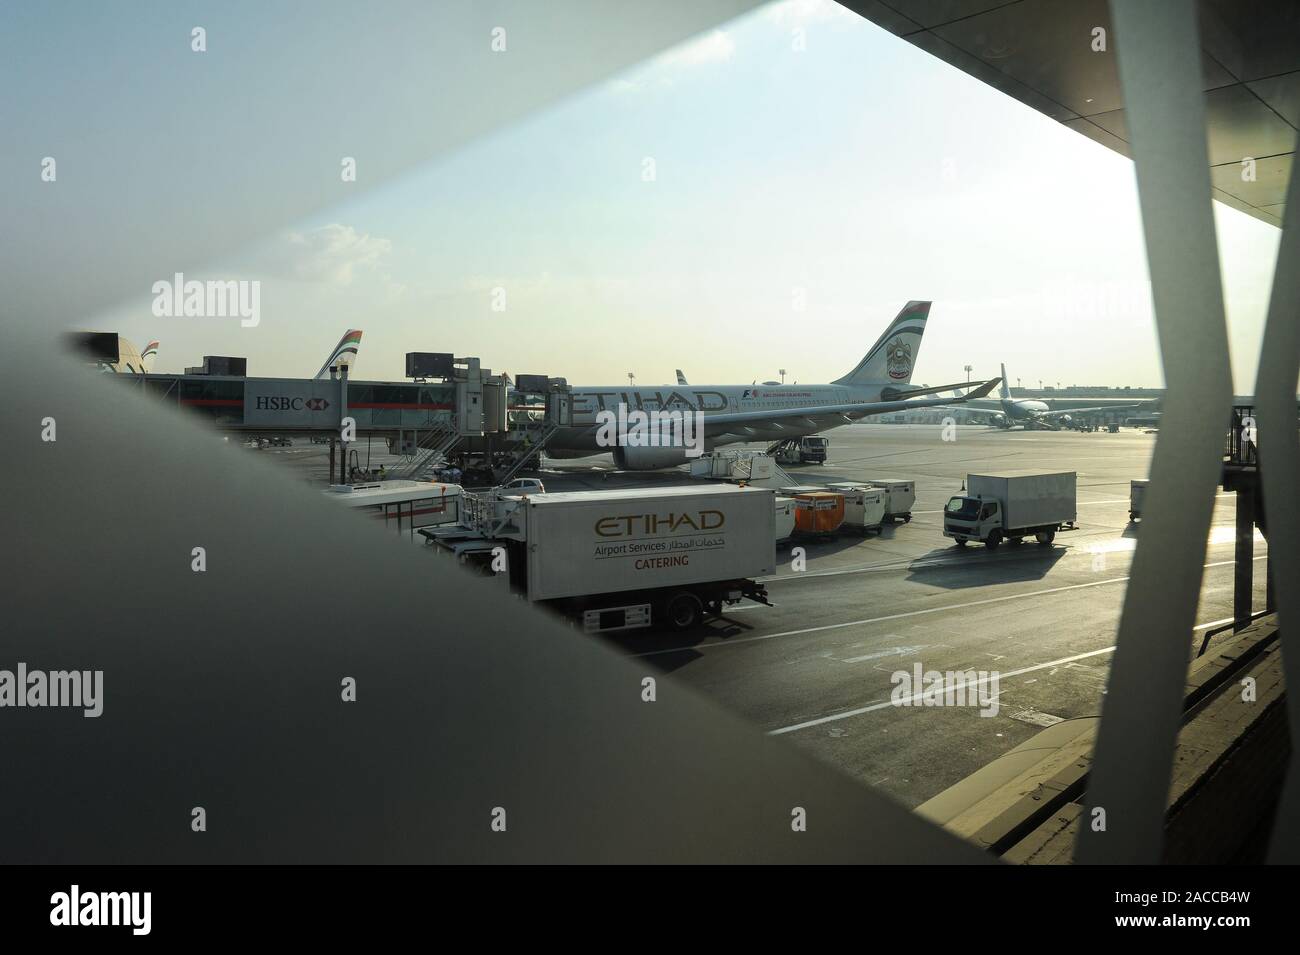 04.01.2014, Abu Dhabi, Vereinigte Arabische Emirate - Blick durch ein Fenster im abflugterminal der Schürze am Abu Dhabi International Airport. Stockfoto